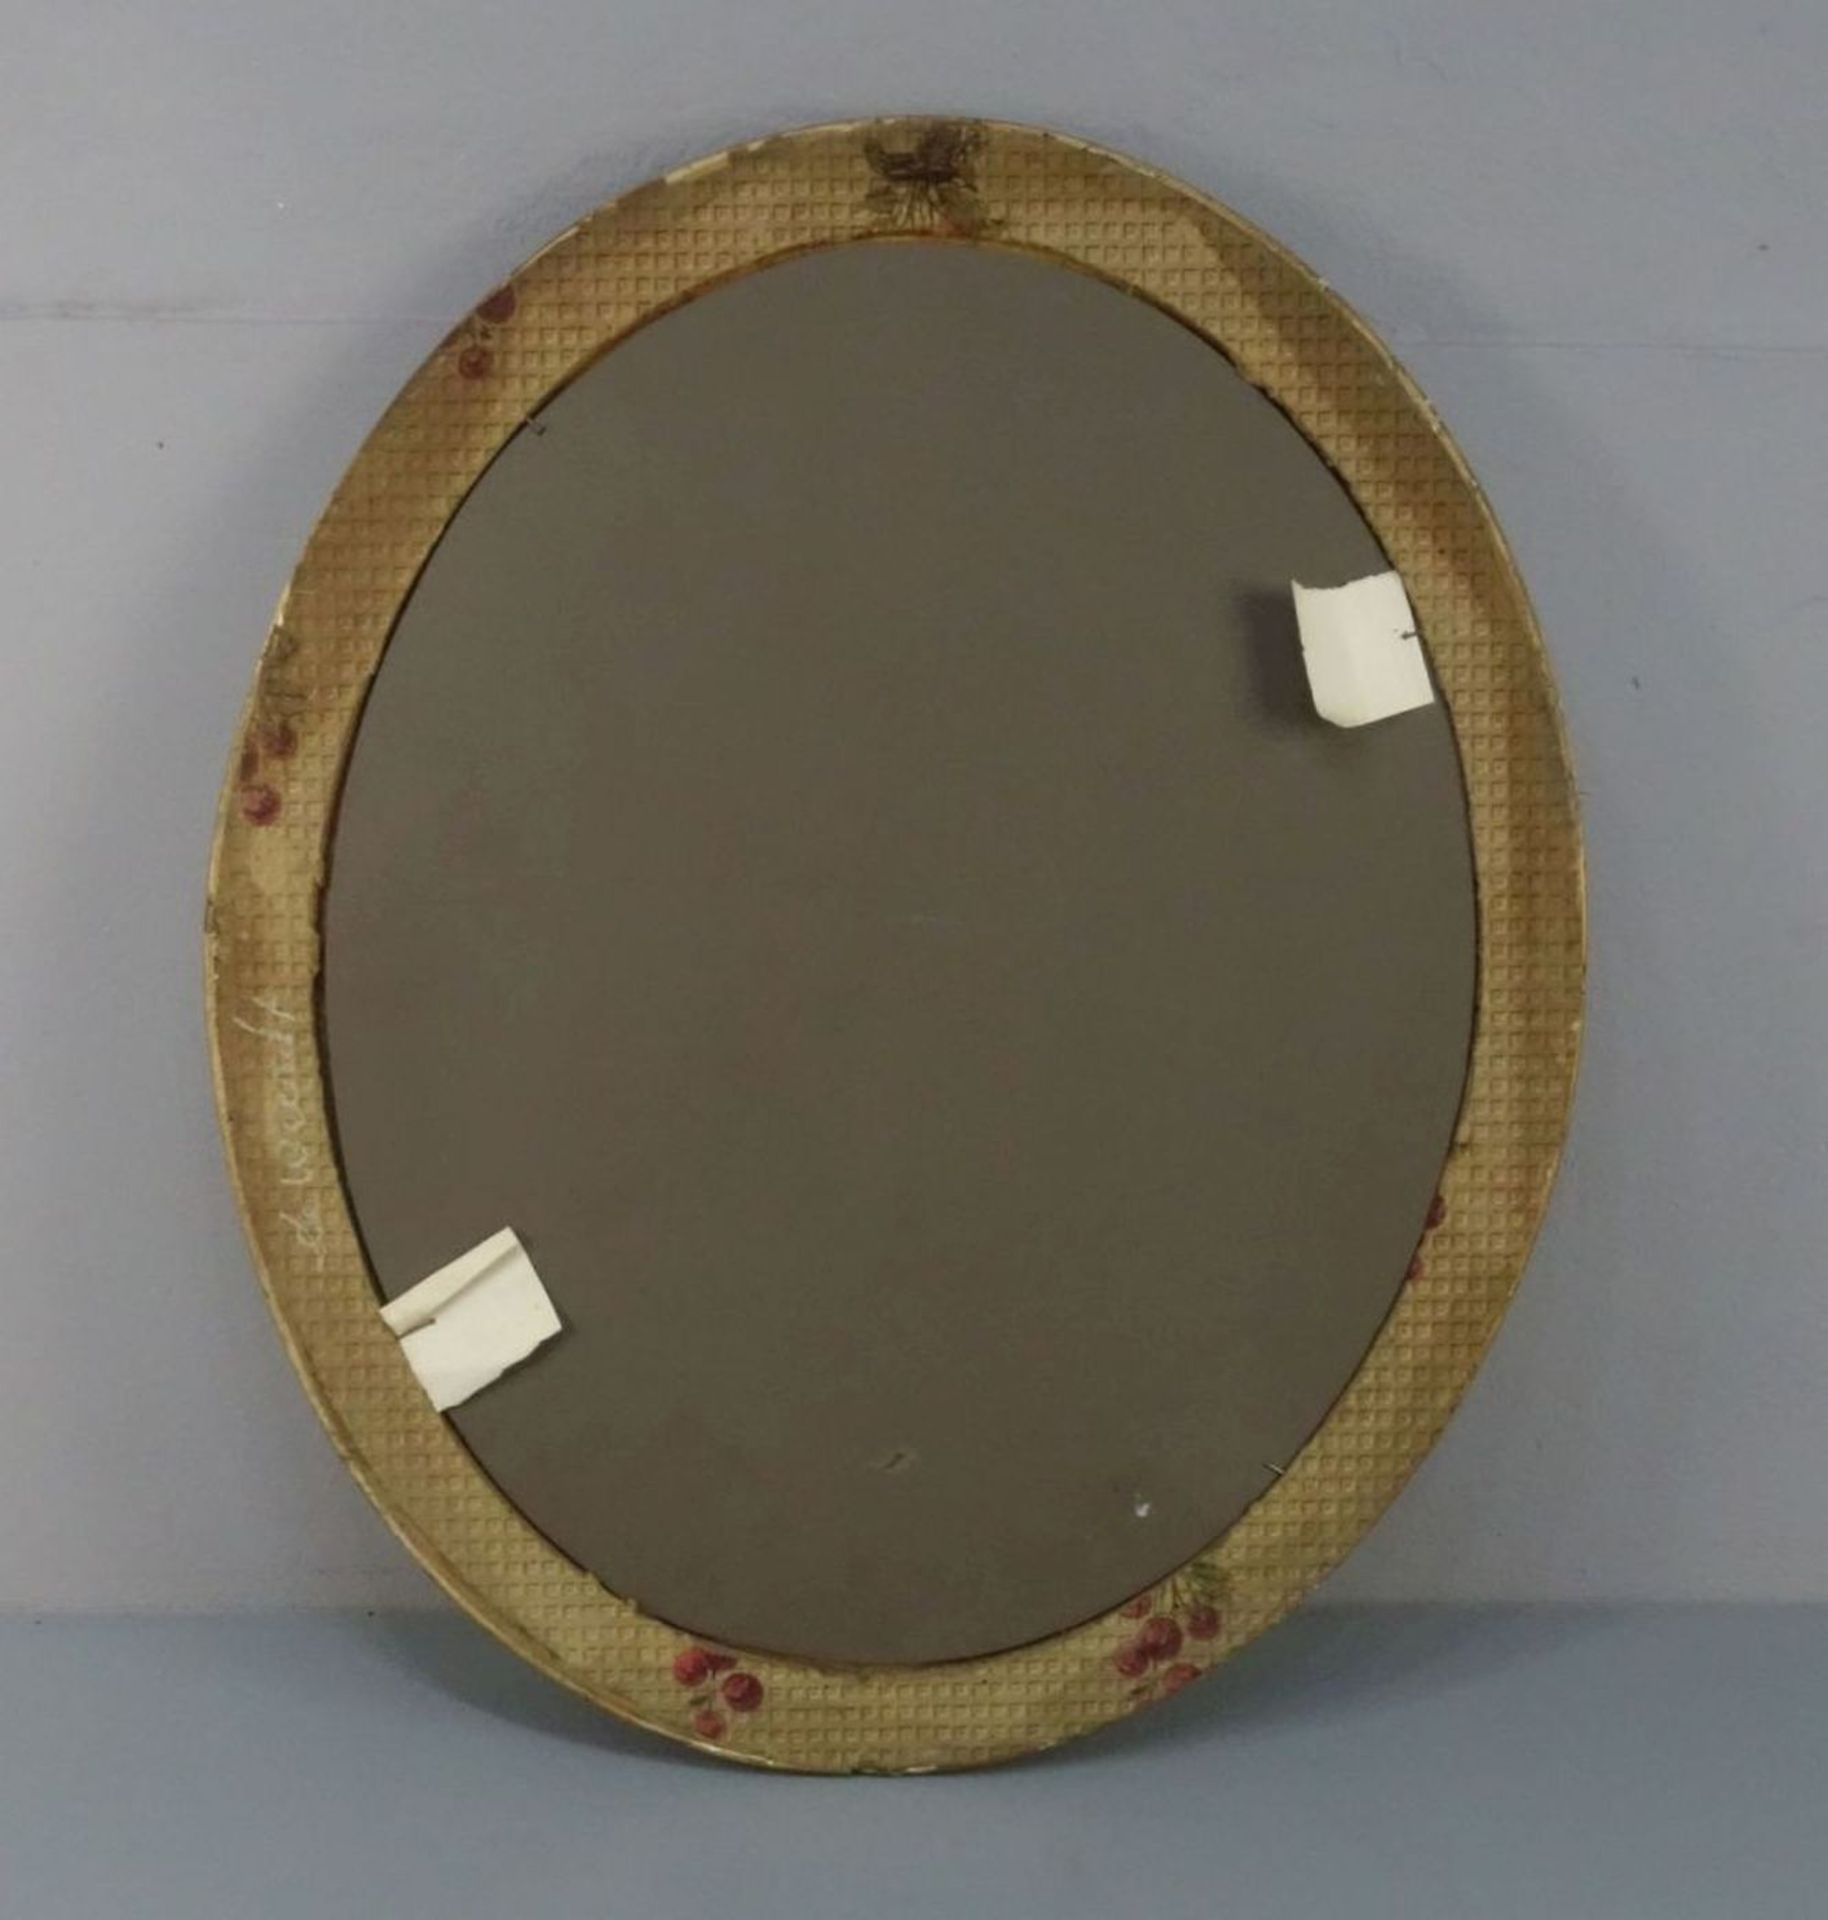 SPIEGEL / mirror, ovale Form mit Facettschliff, aufgewölbte, profilierte und goldfarben gefasste - Bild 3 aus 3